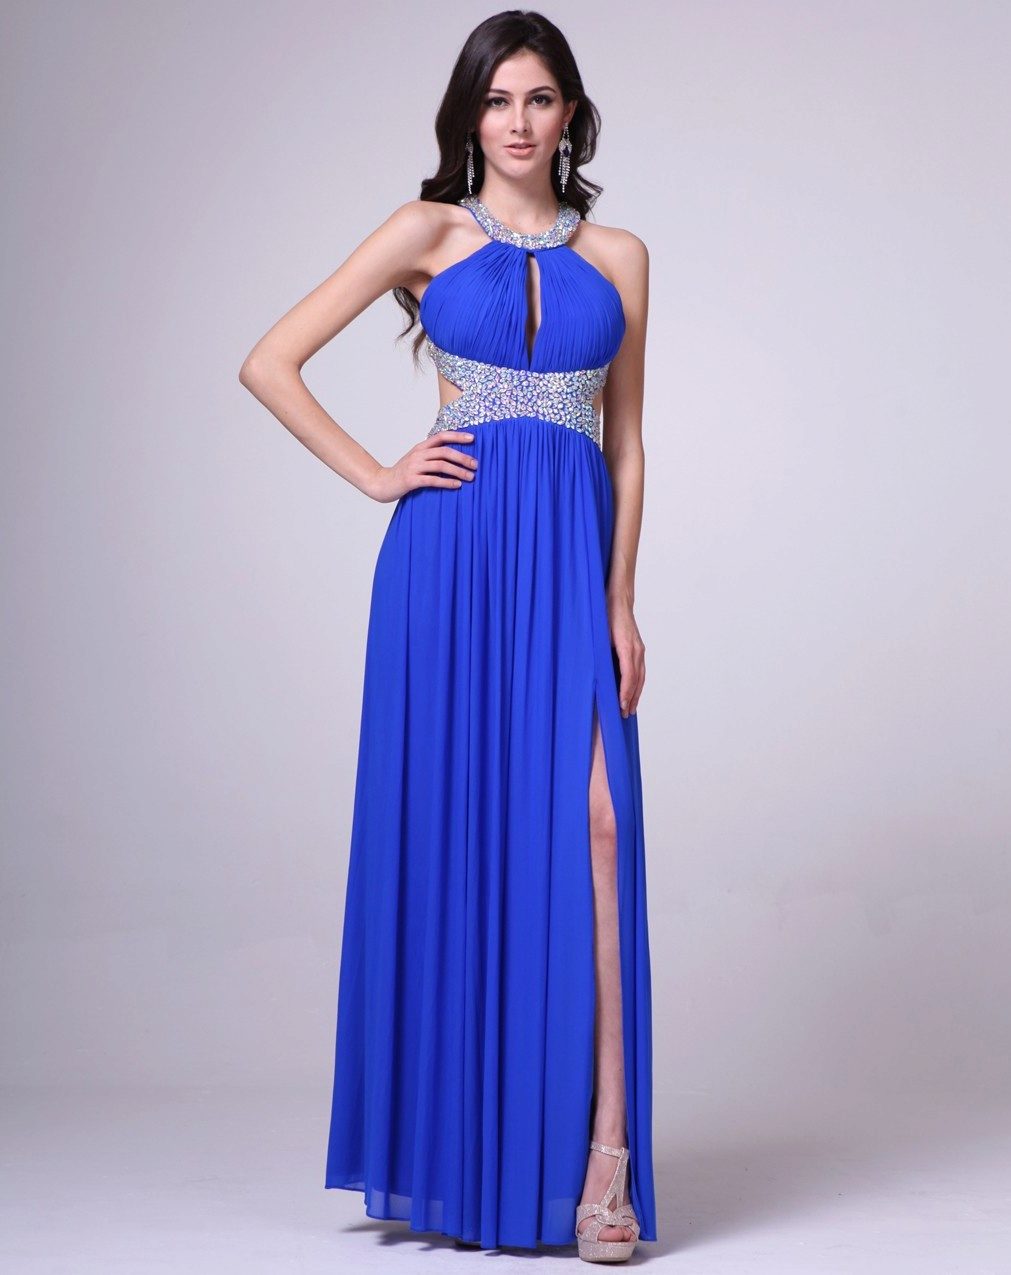 синее платье в греческом стиле фото